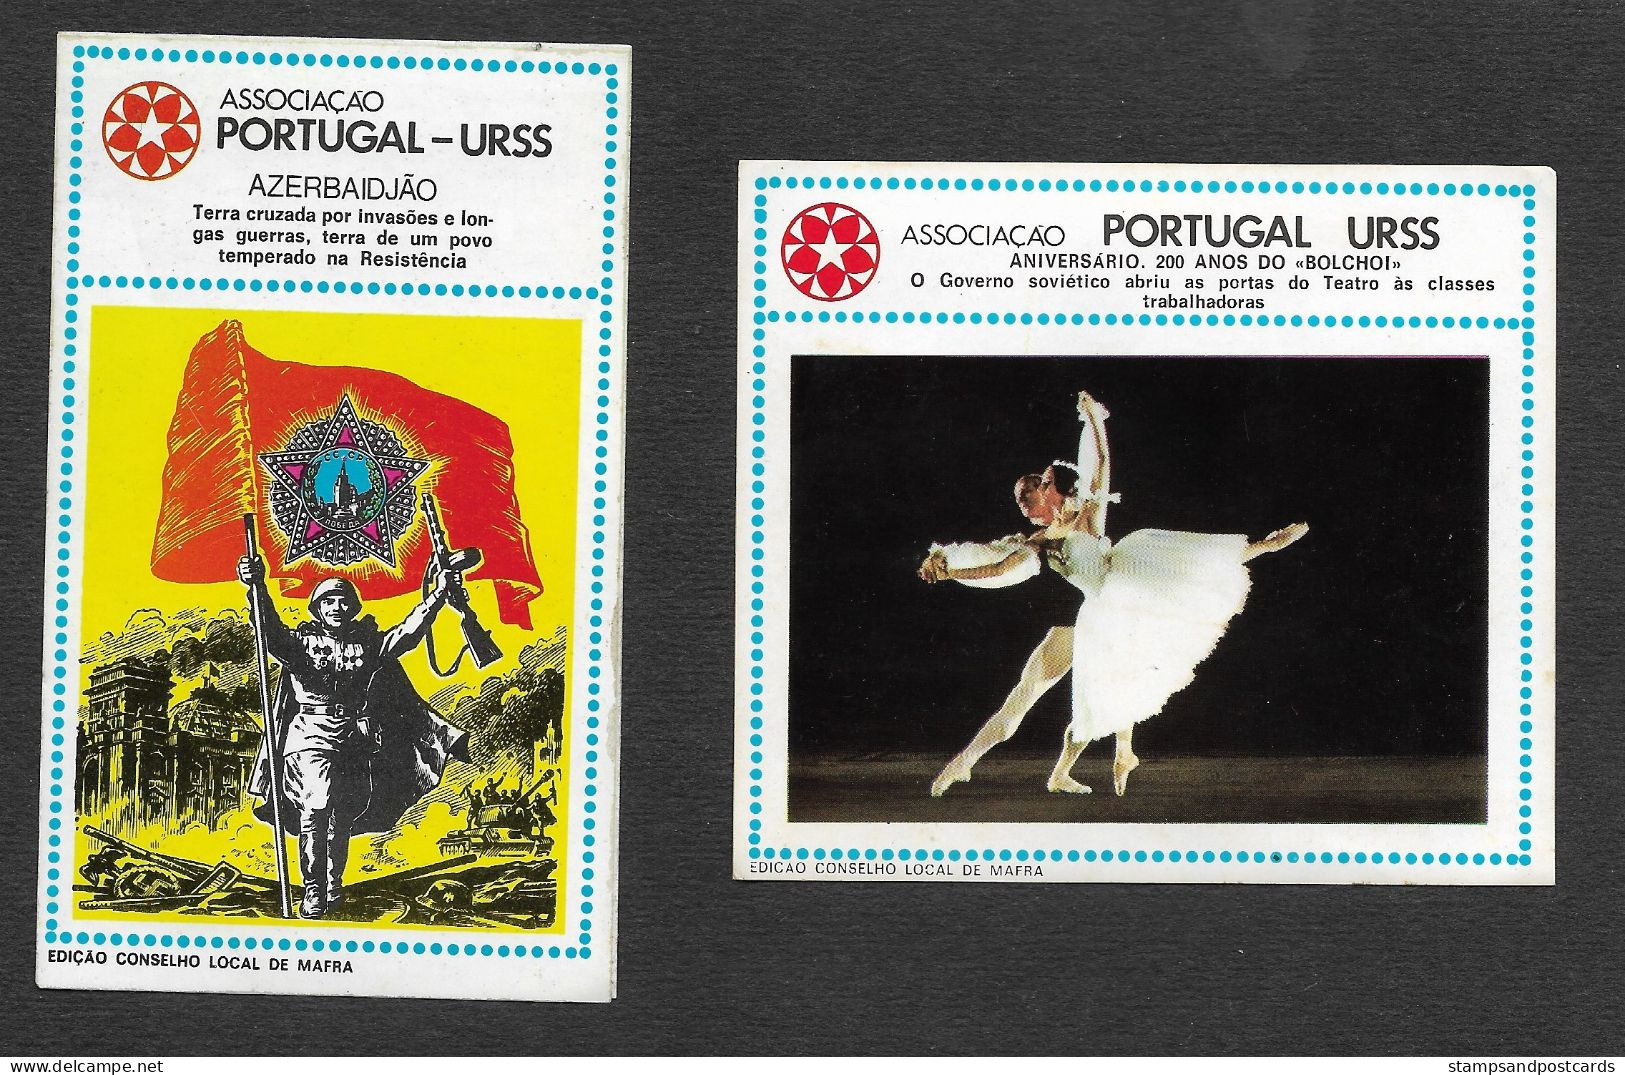 Portugal URSS USSR Association Amitié Union Soviètique Russie Communiste 8 Autocollant Communist Political Sticker 1976 - Stickers